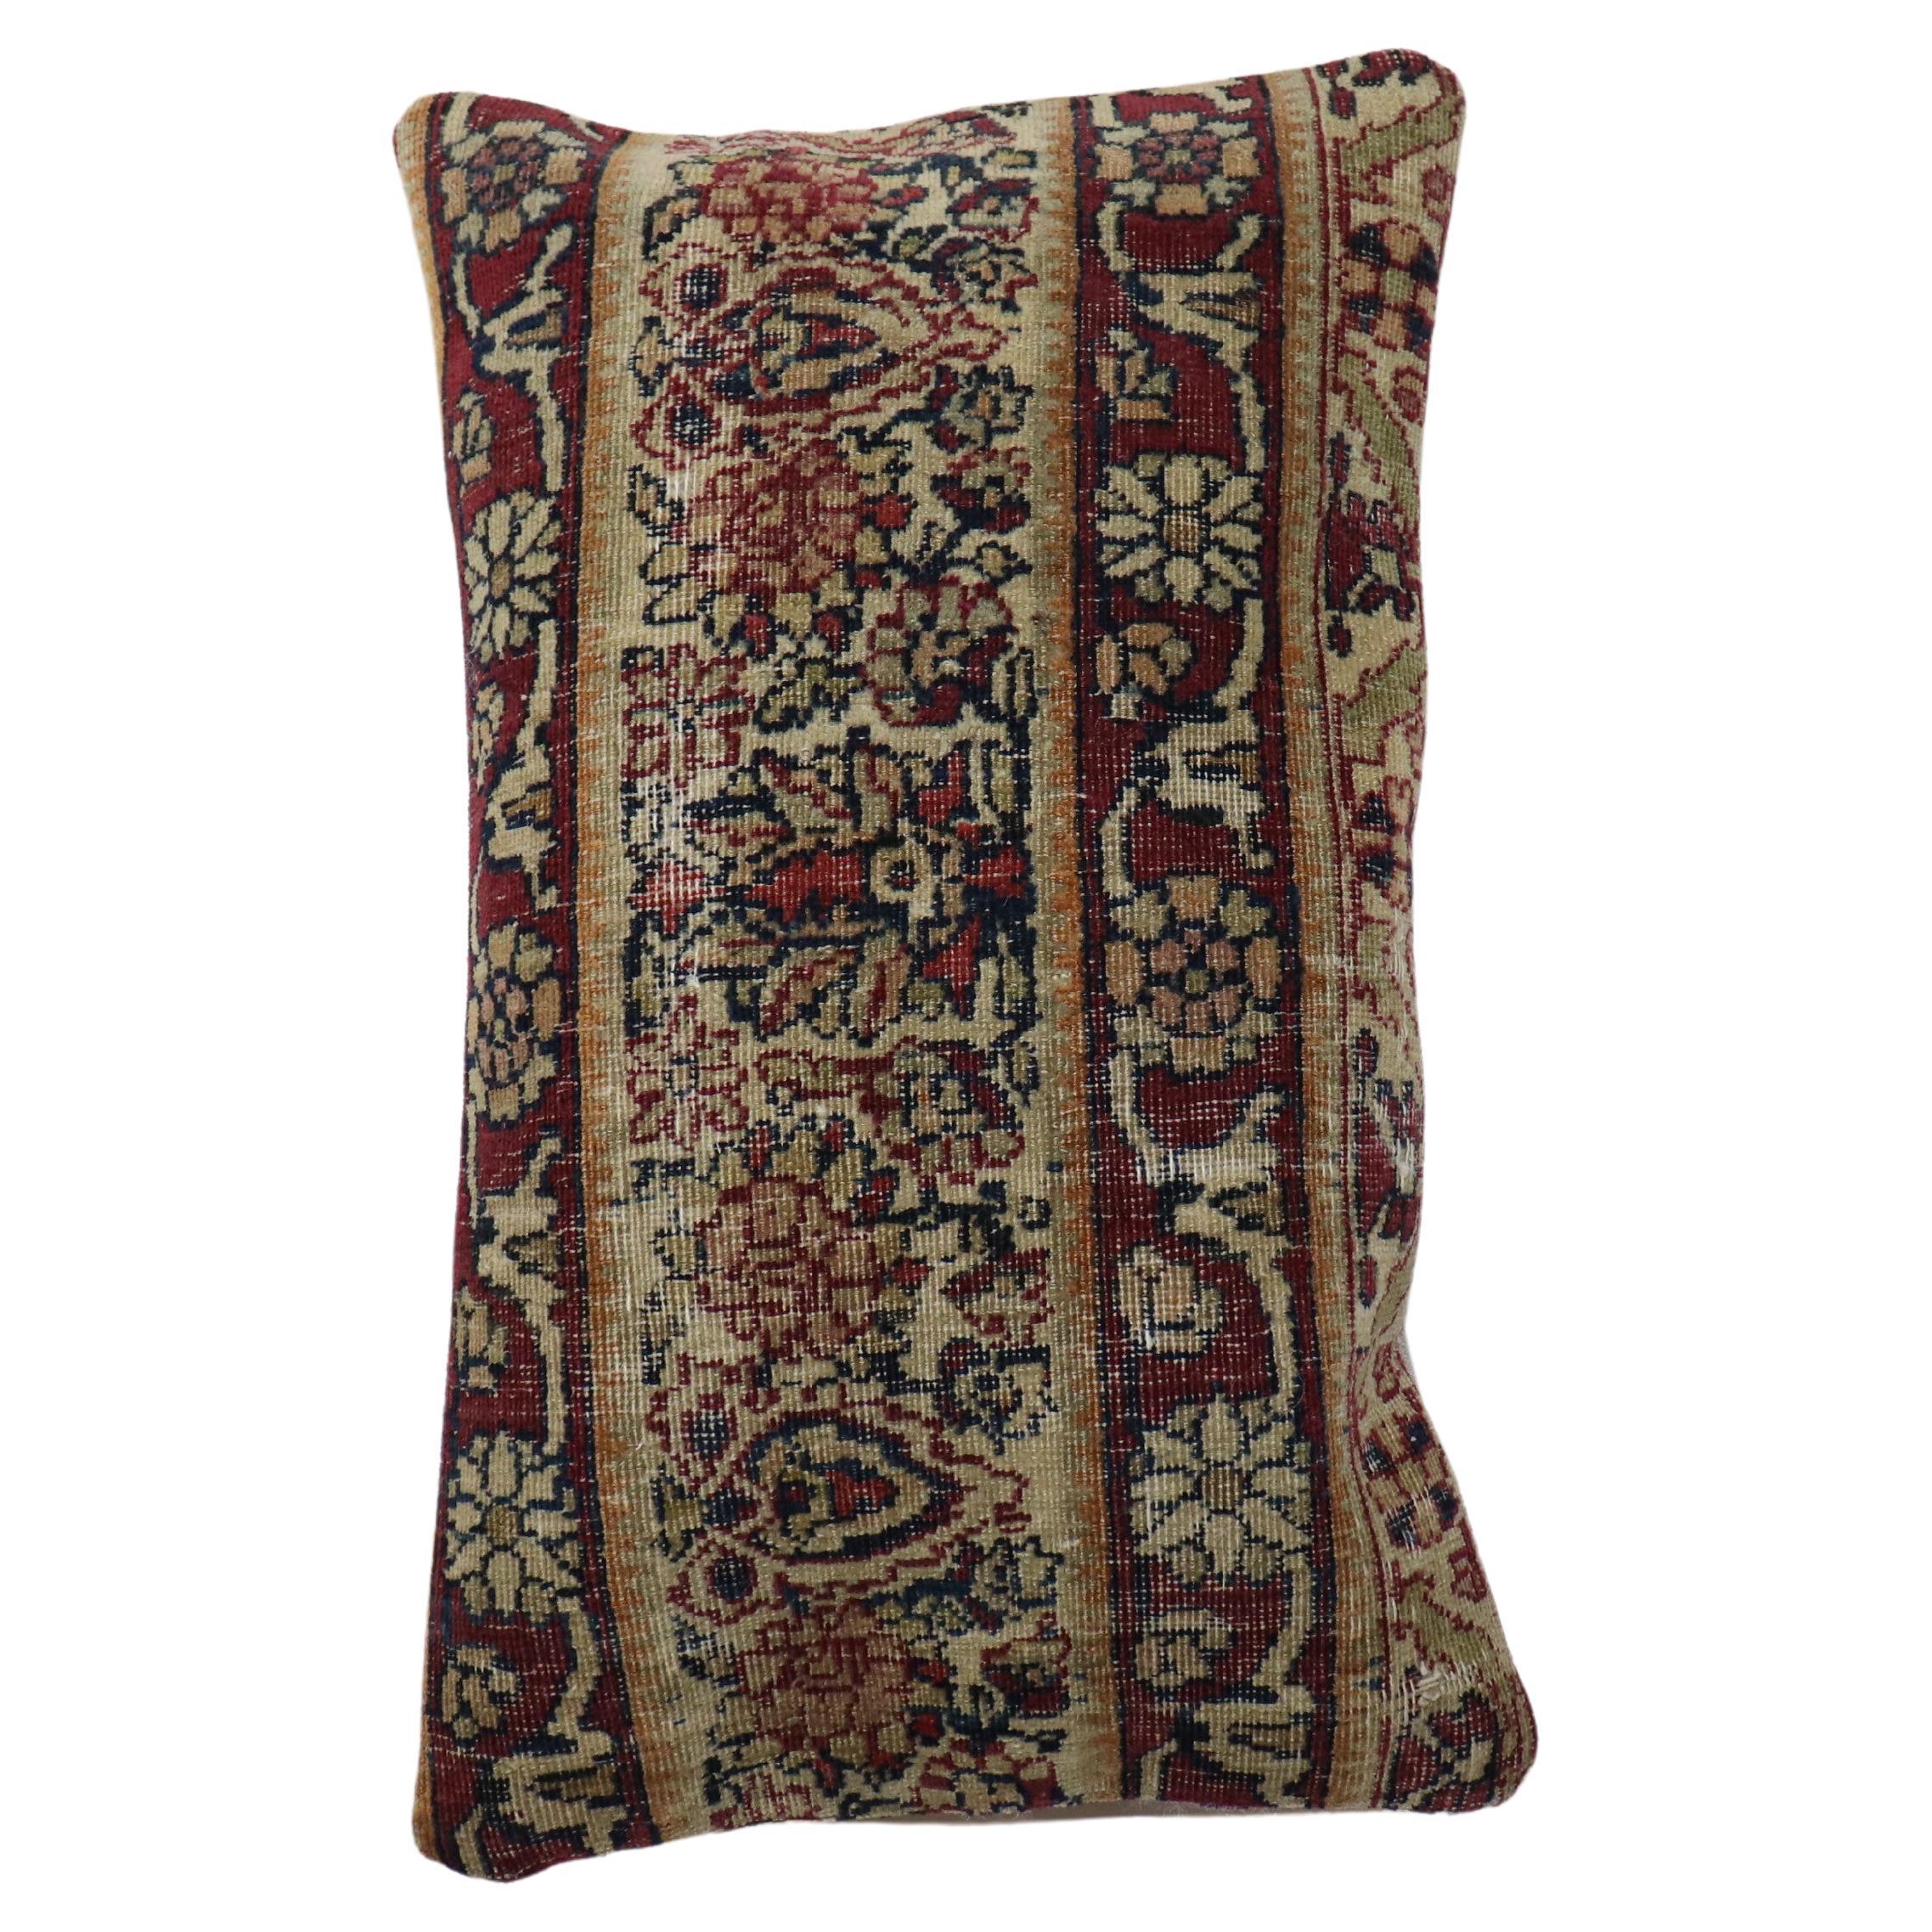 Bolster Größe Kissen aus einem persischen Kerman-Teppich aus dem 19. Füllungseinsatz und Reißverschluss vorhanden

Maße: 12